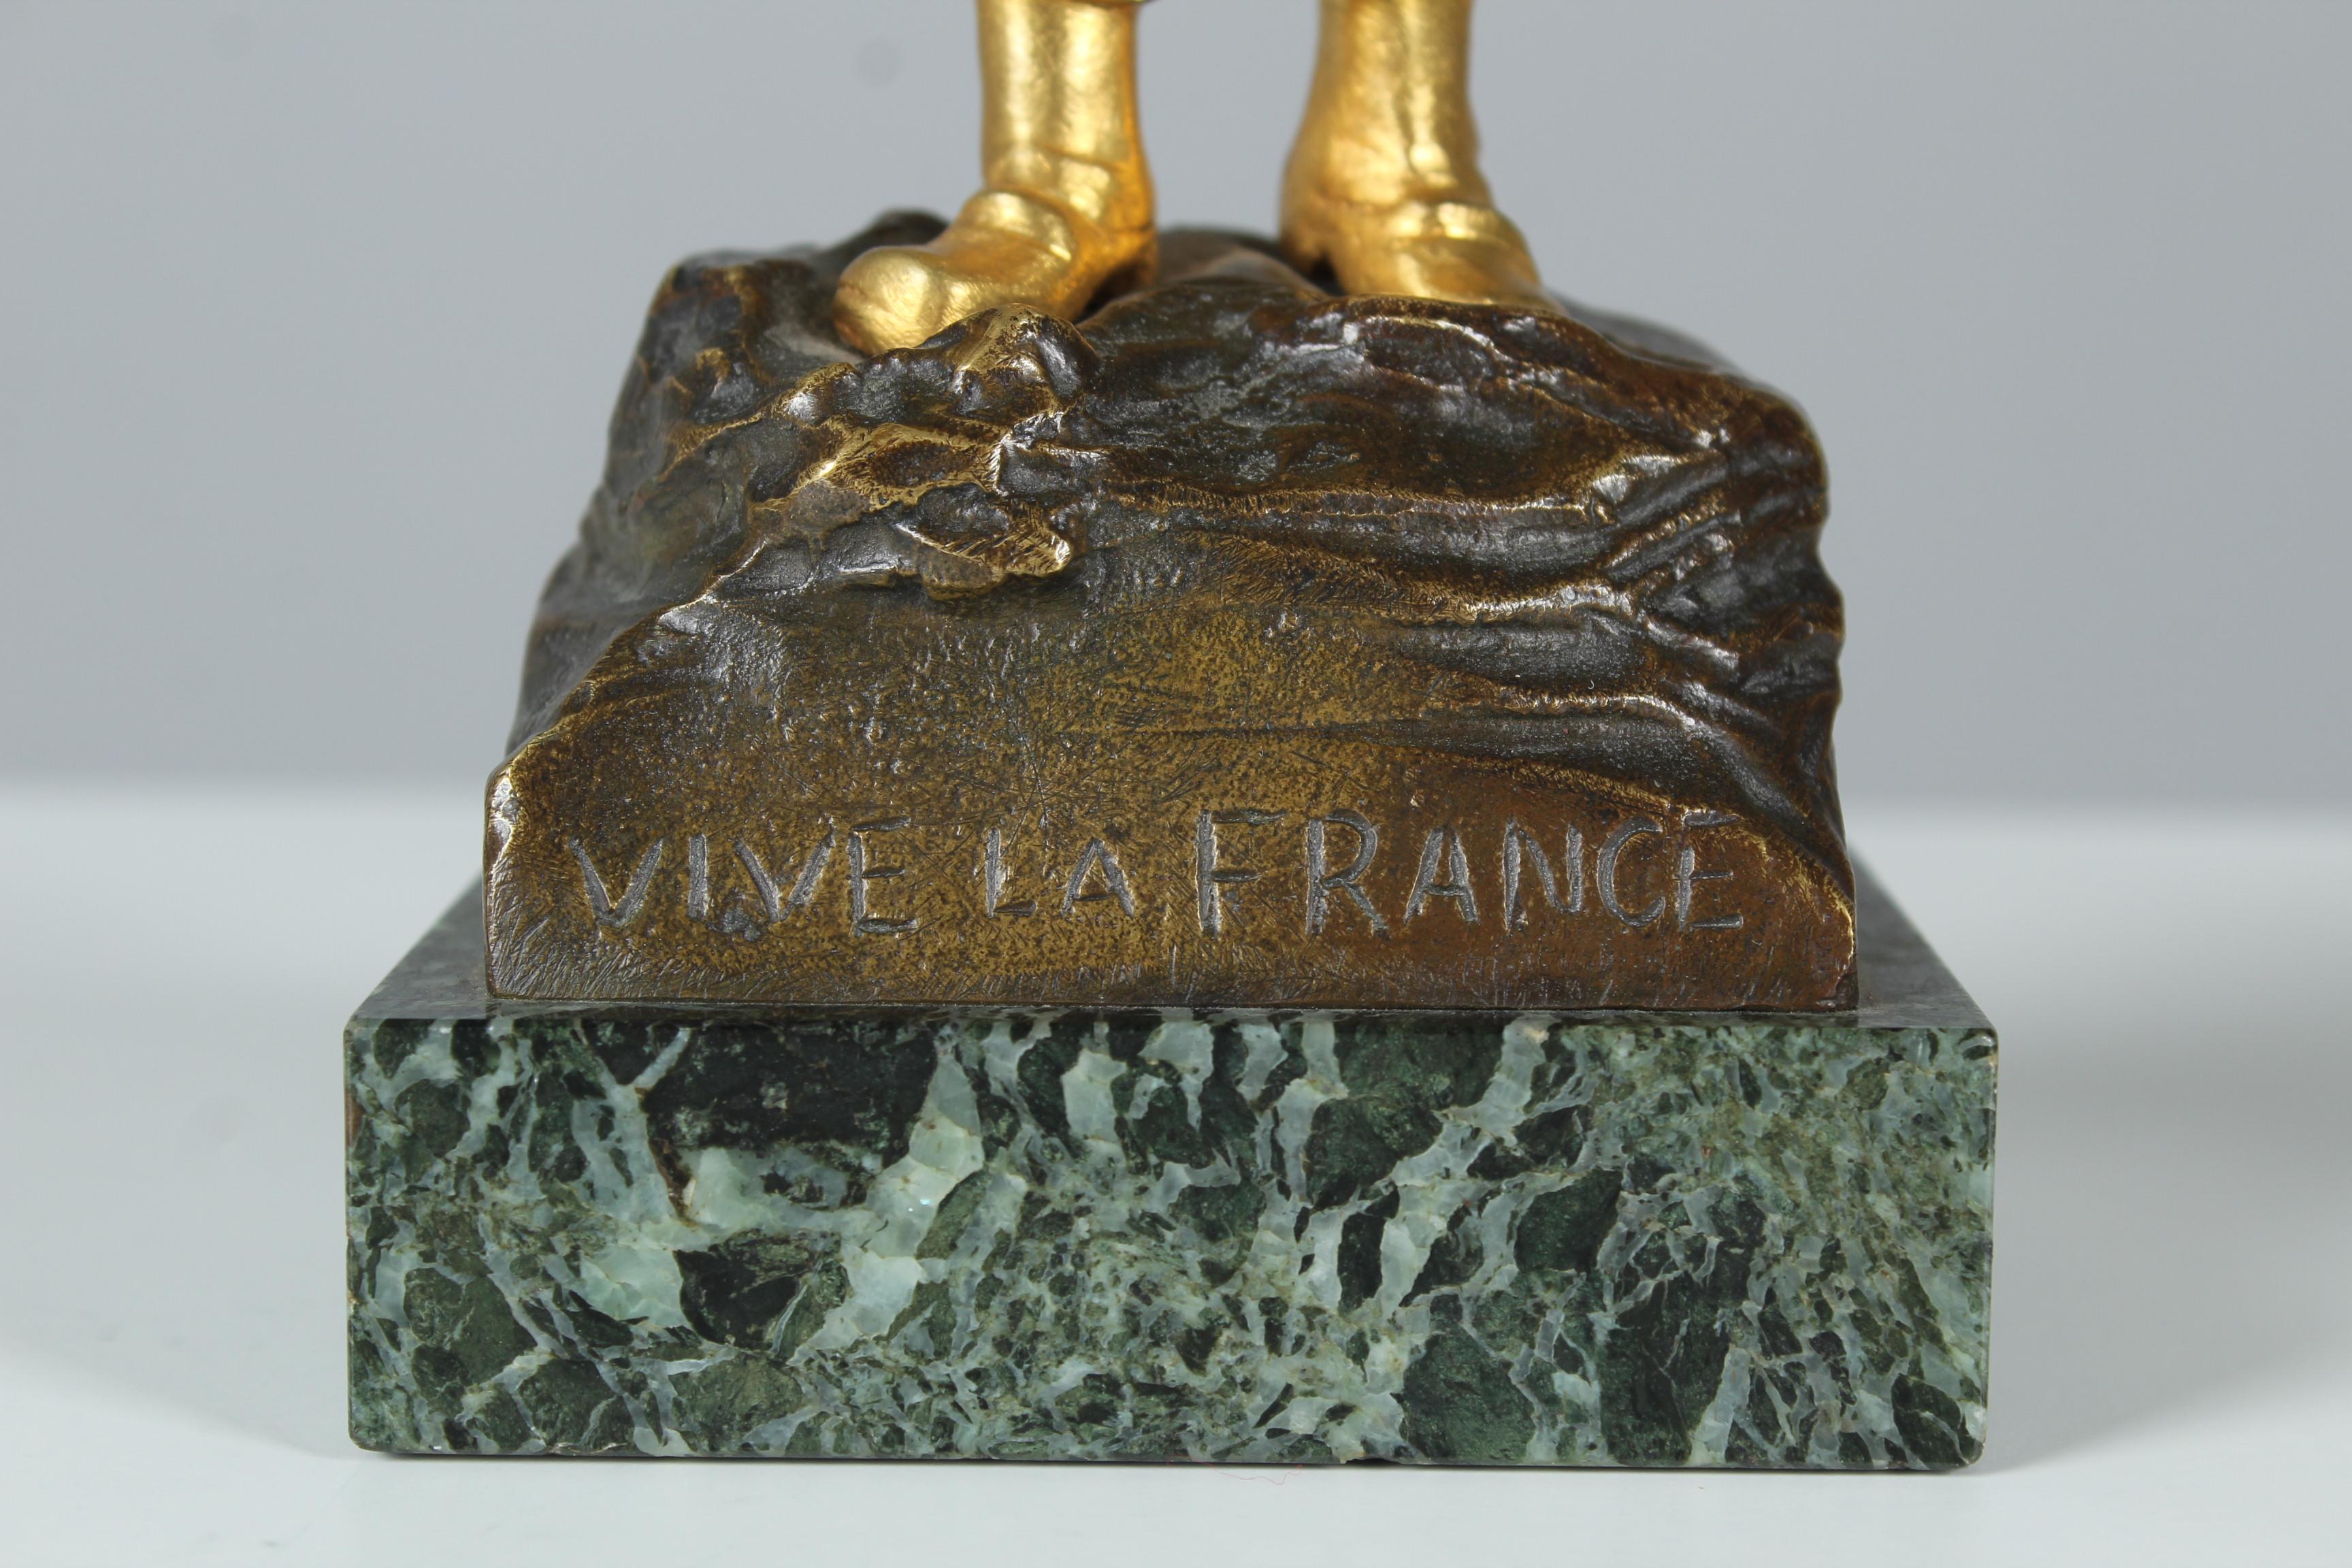 Rare Antique Pair of Sculptures, Bronze Dorée, Vive La France, Signed G. Flamend For Sale 7